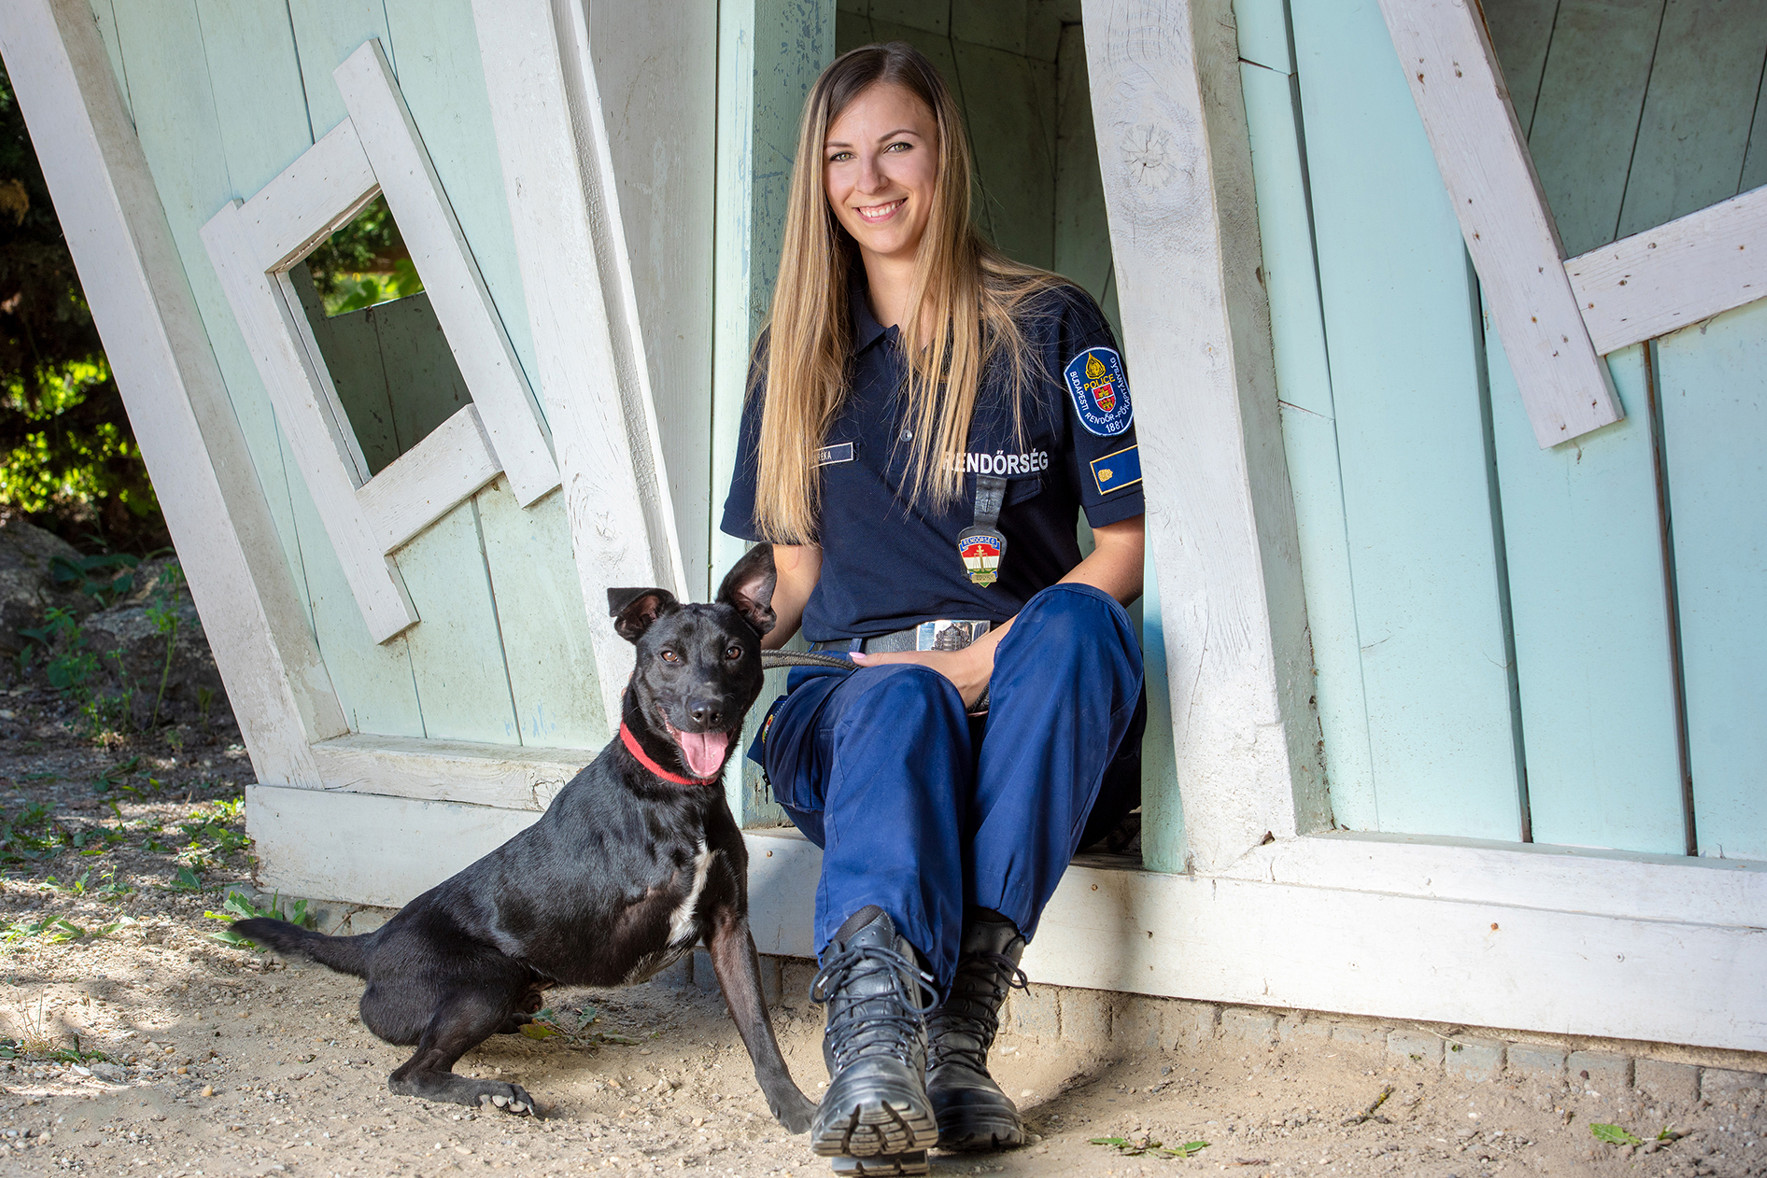 A budapesti rendőrök idén is segítenek gazdát találni örökbefogadásra váró kutyáknak és macskáknak.